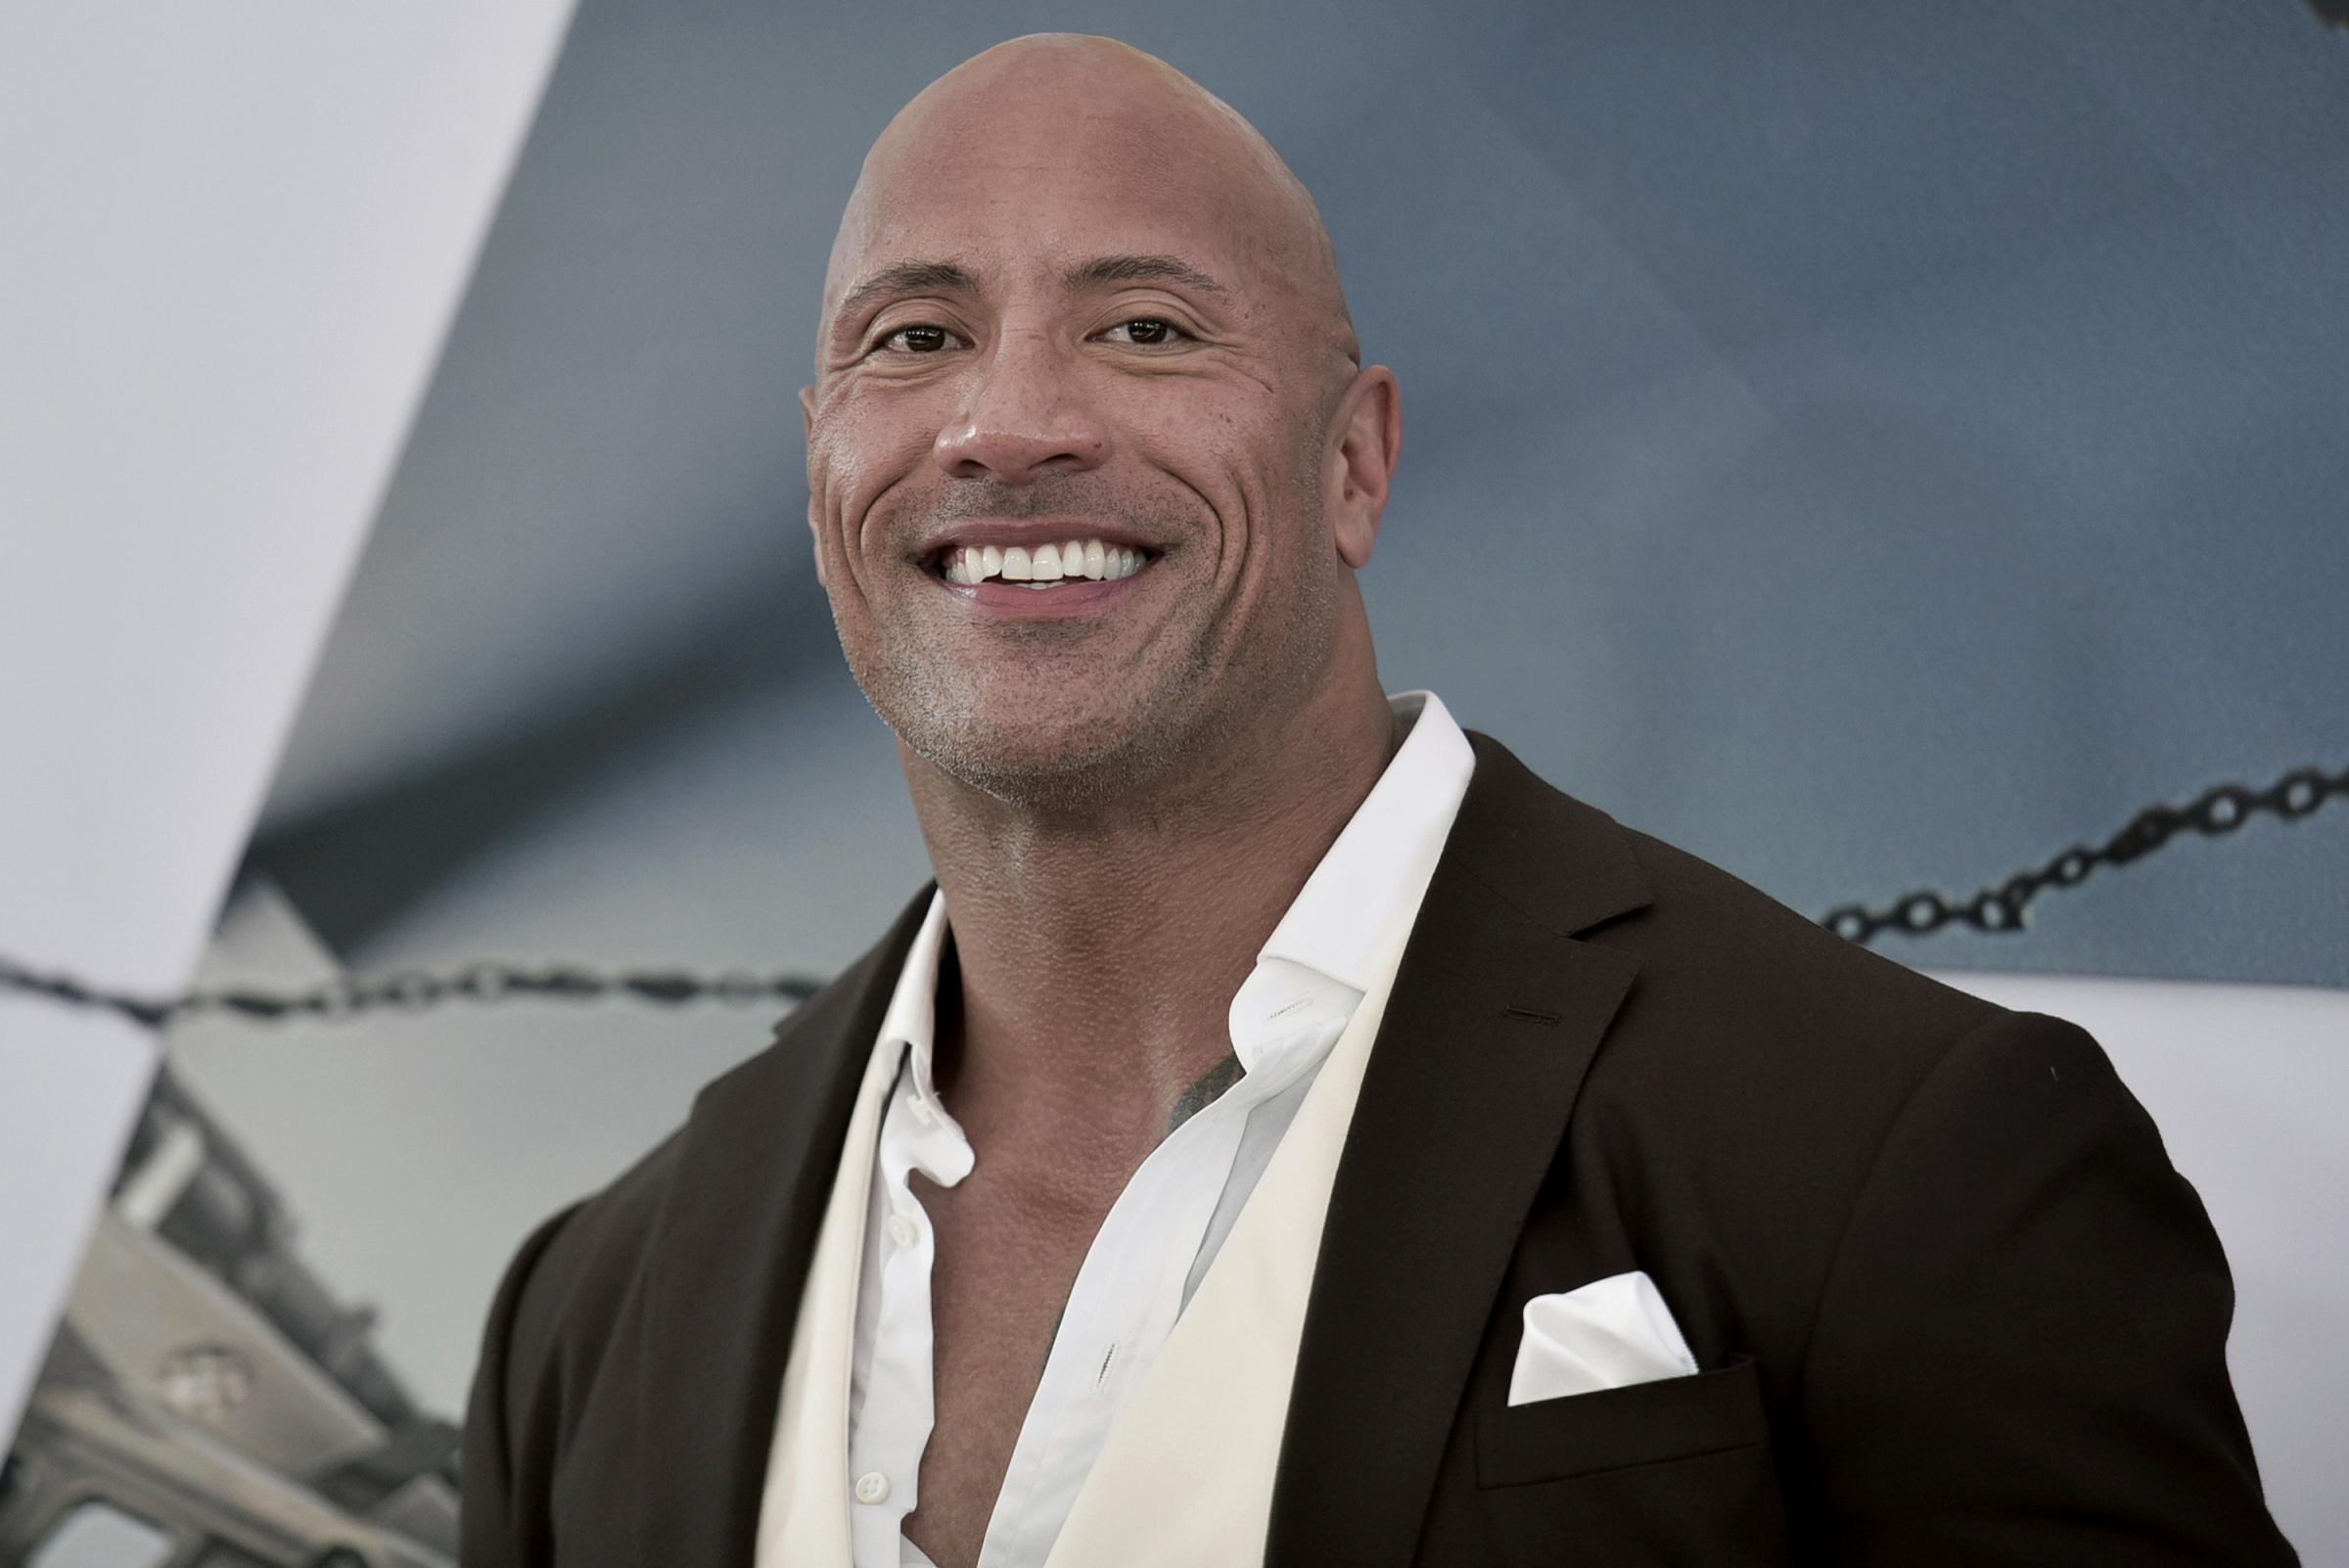 Dwayne Johnson “The Rock”, per Forbes è l’attore più pagato di Hollywood